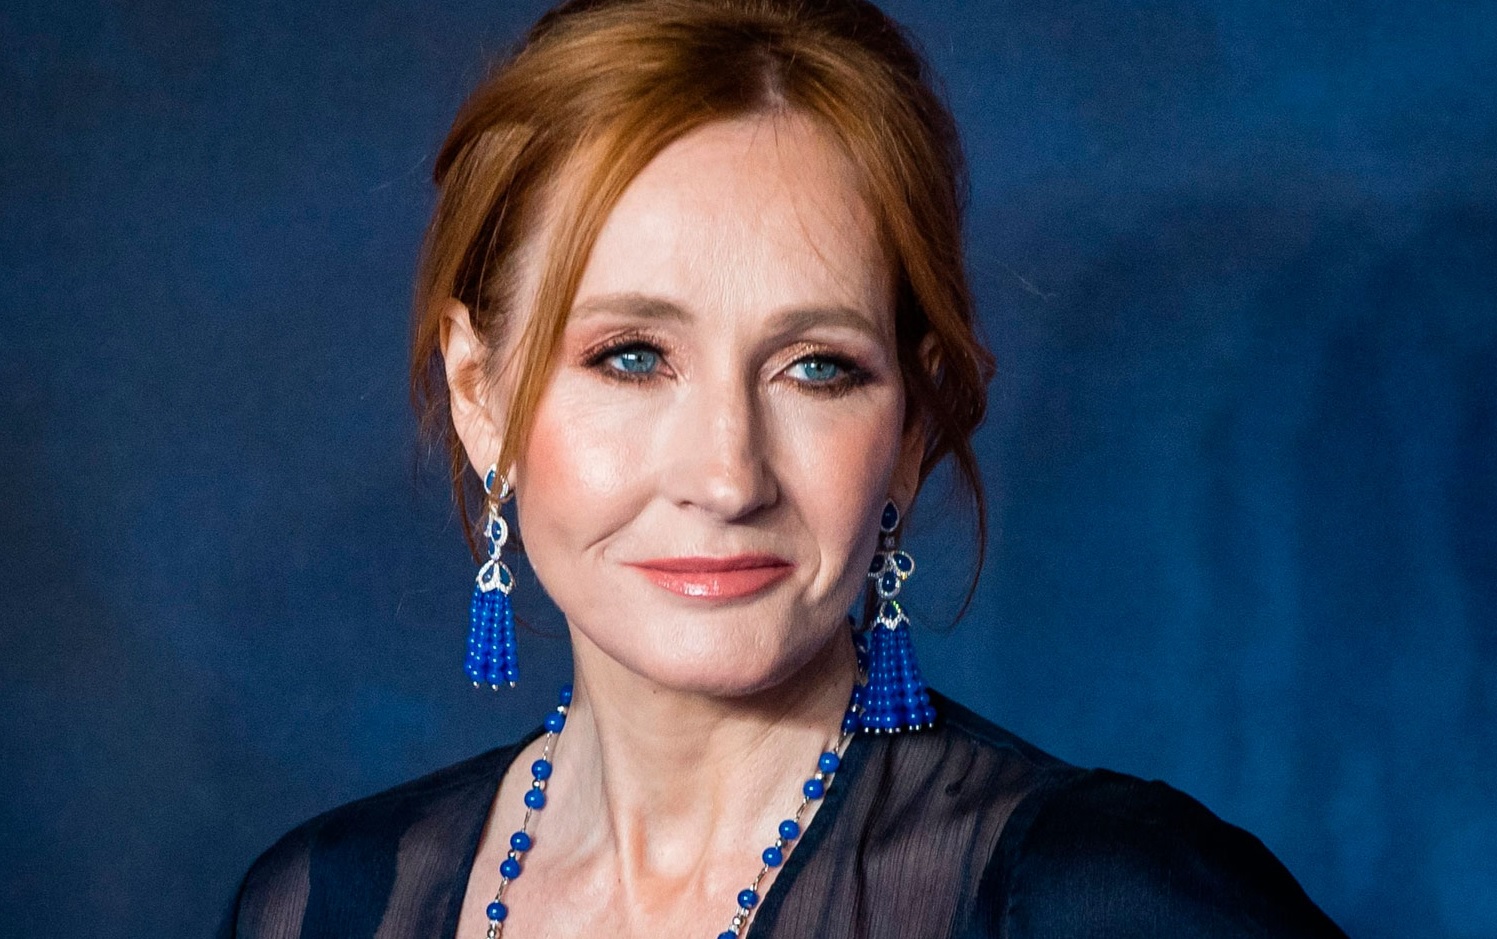 J. K. Rowling e transfobia - Por que a autora de Harry Potter é considerada transfóbica?